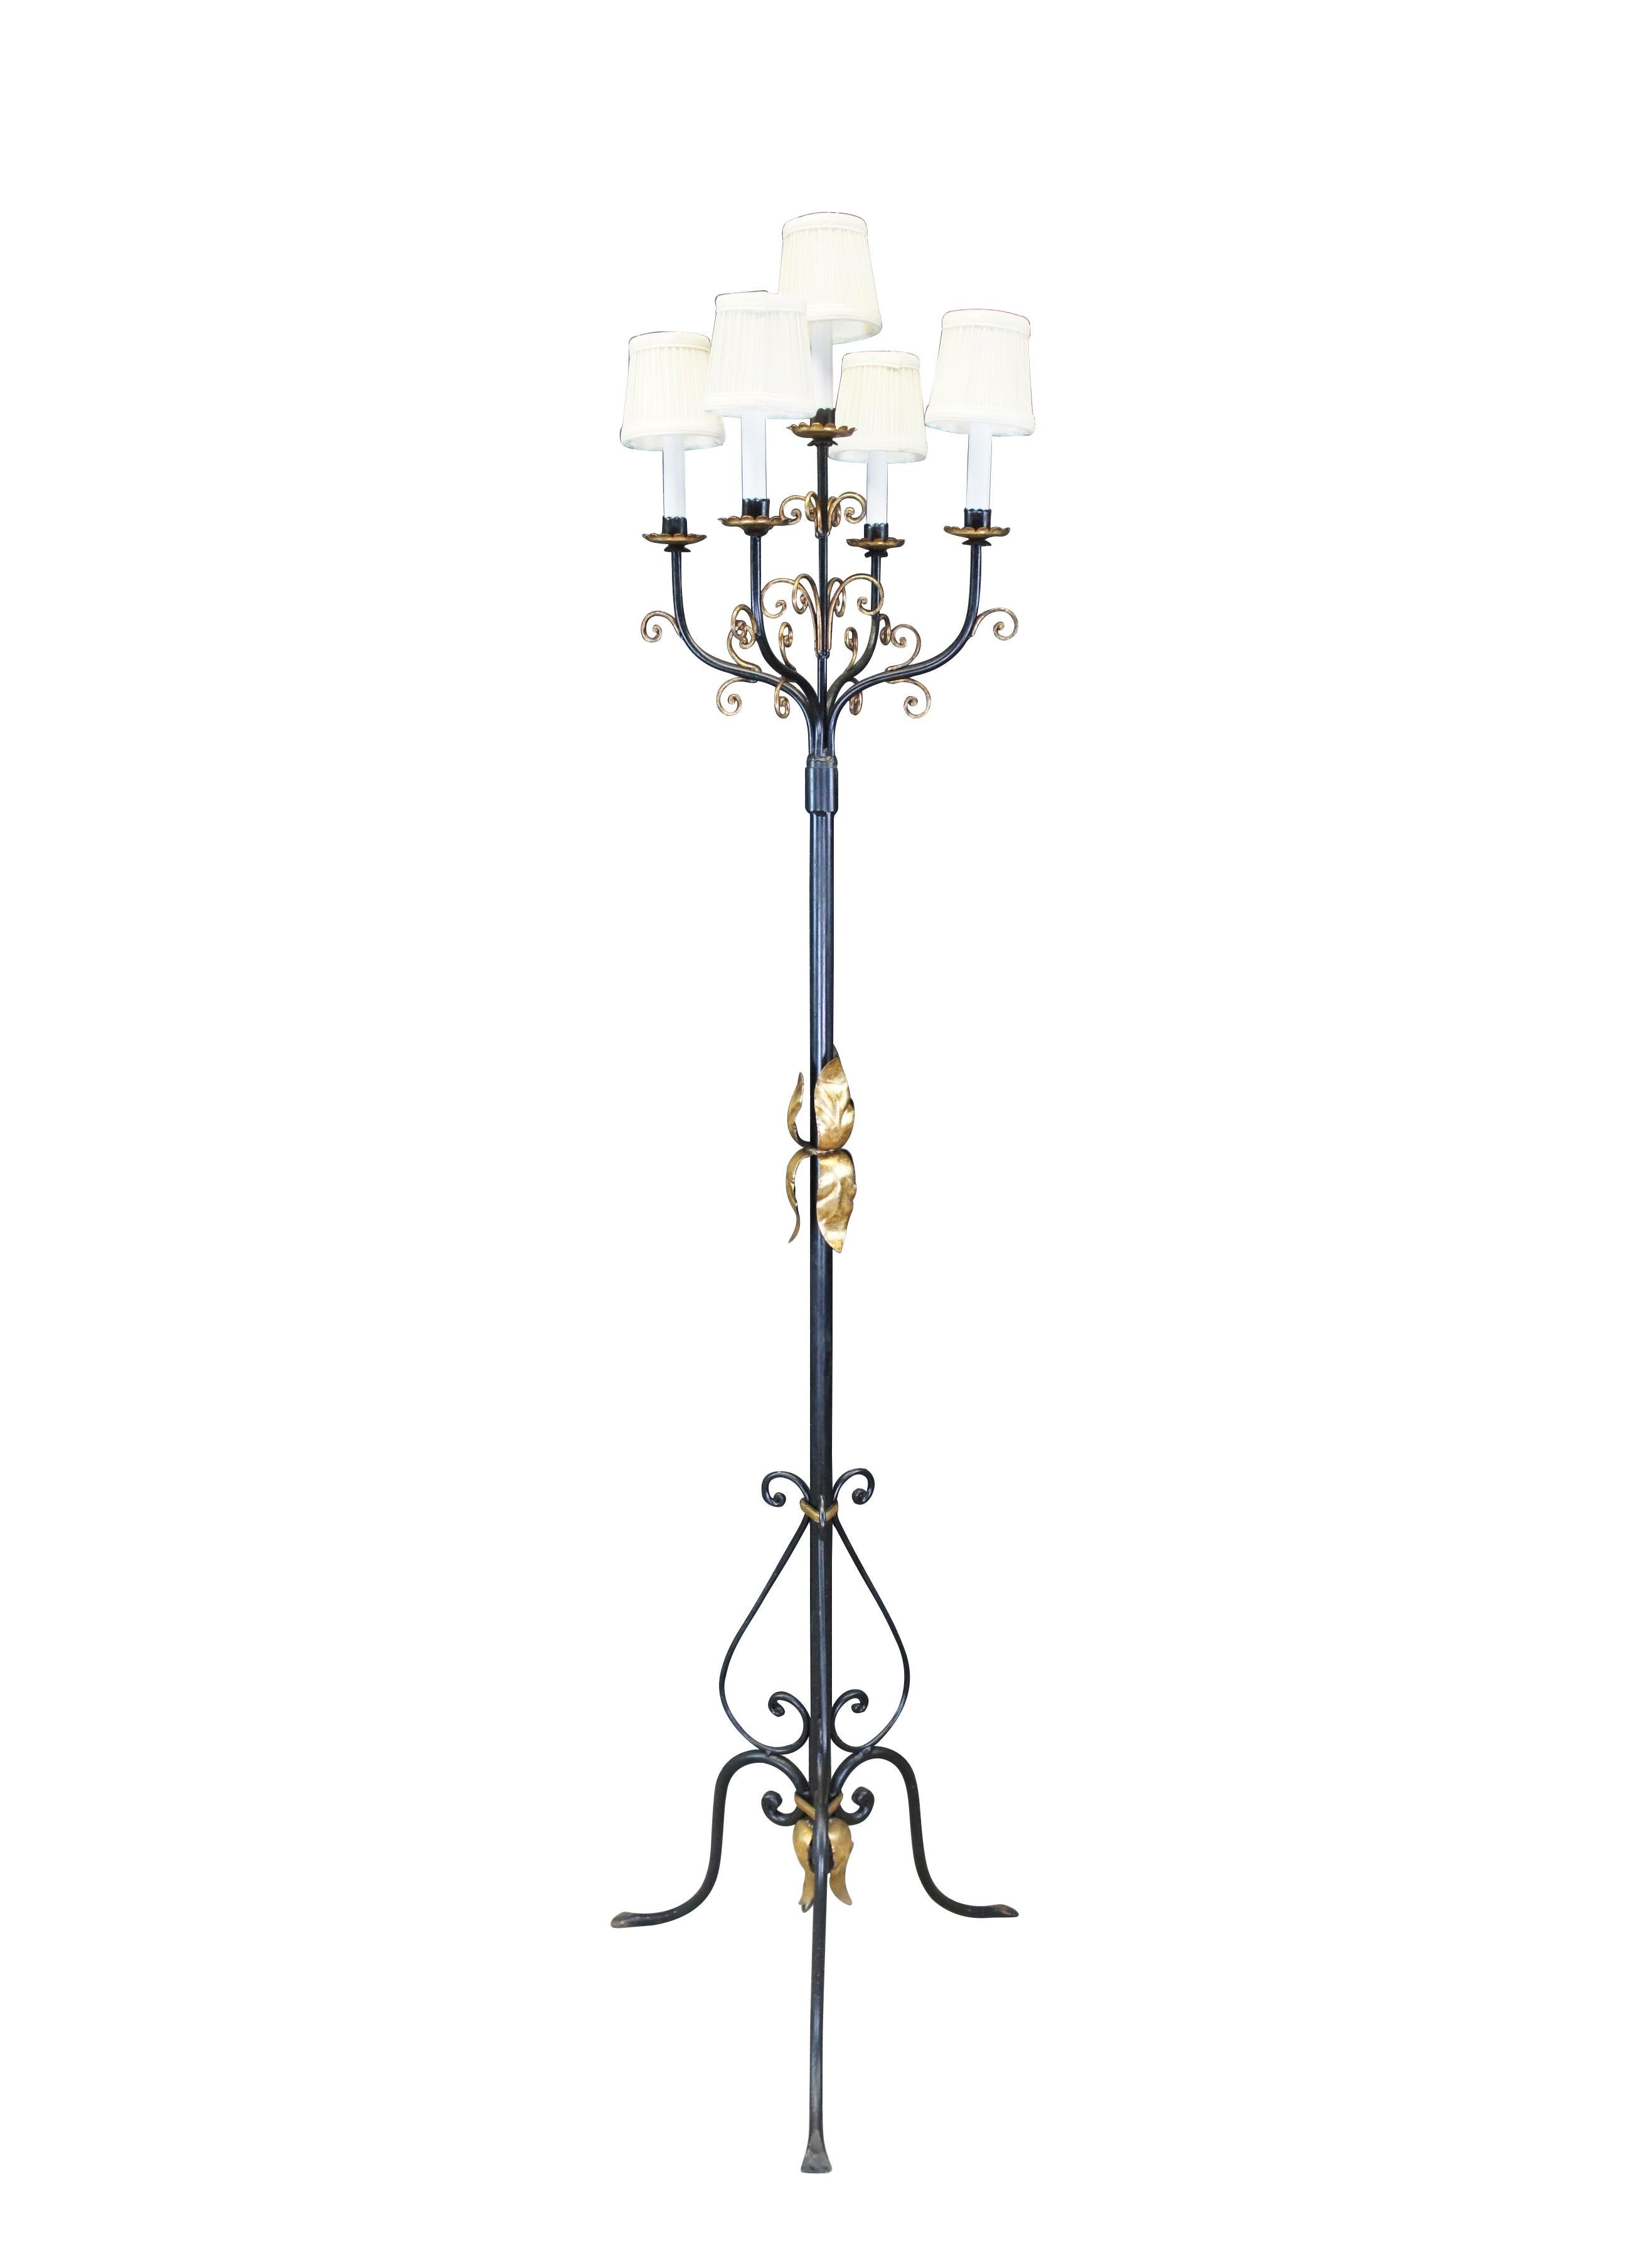 Grand lampadaire cinq lampes néo-gothique français, en fer noir à volutes avec des accents d'acanthe dorés et un candélabre à cinq bras.